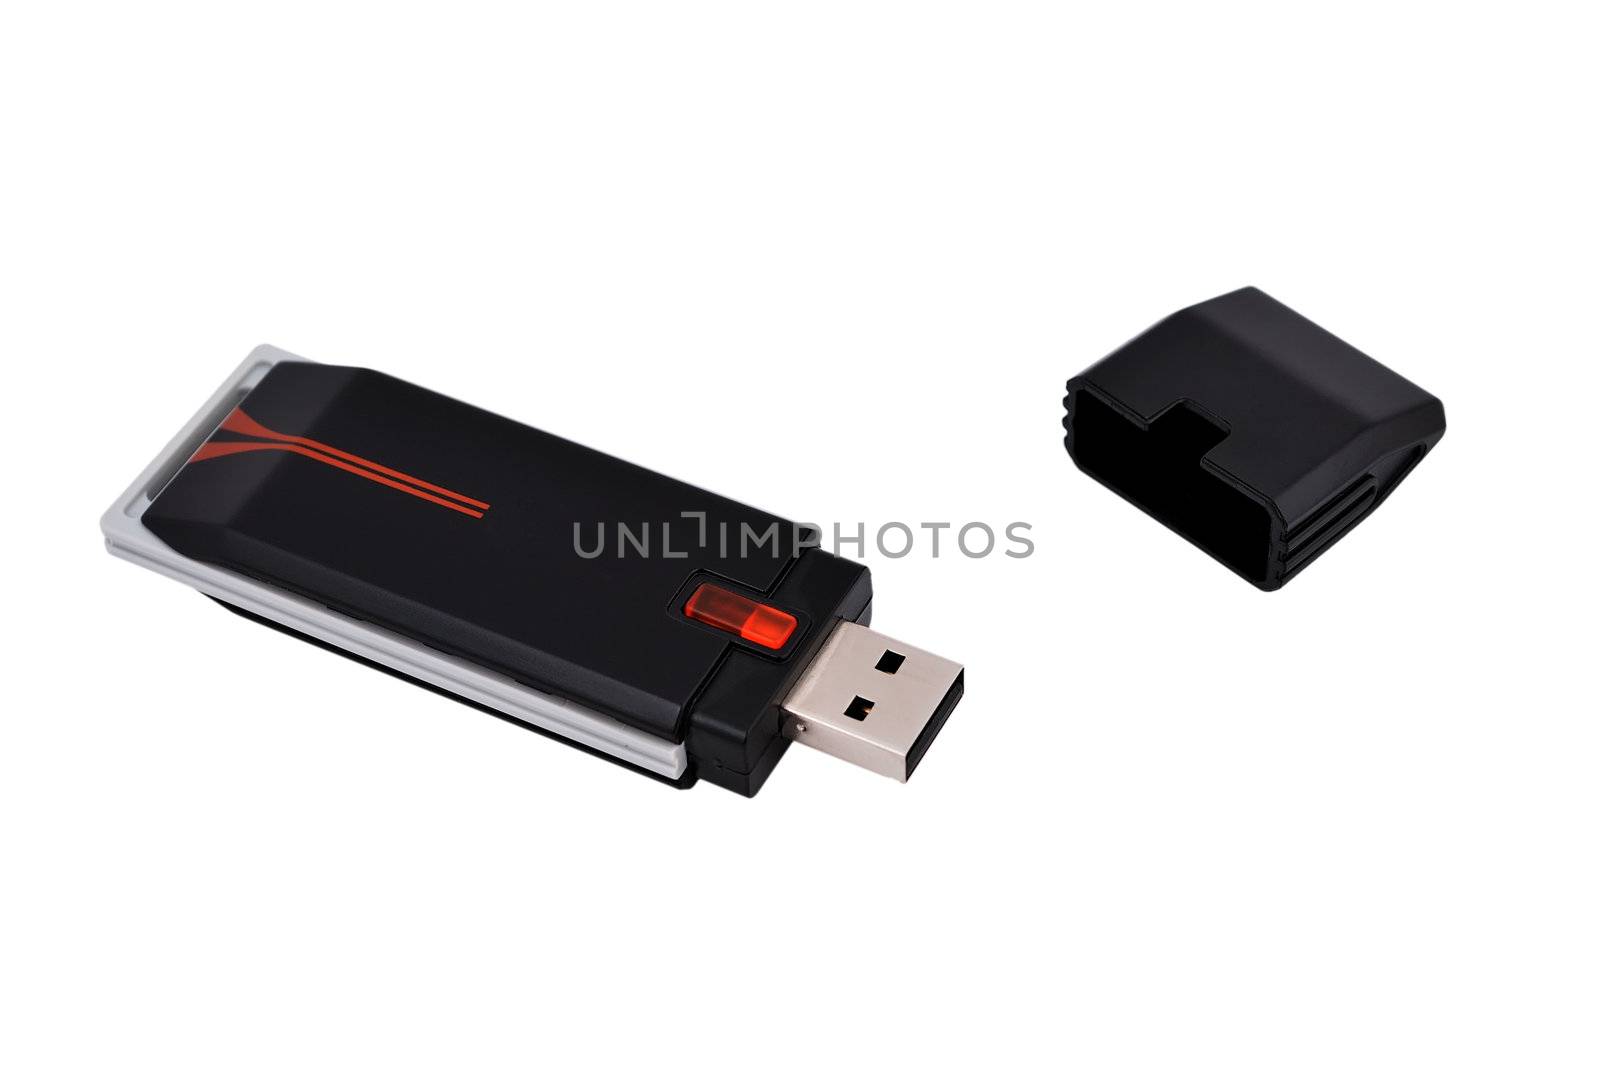 USB Wi-Fi adapter by vetkit